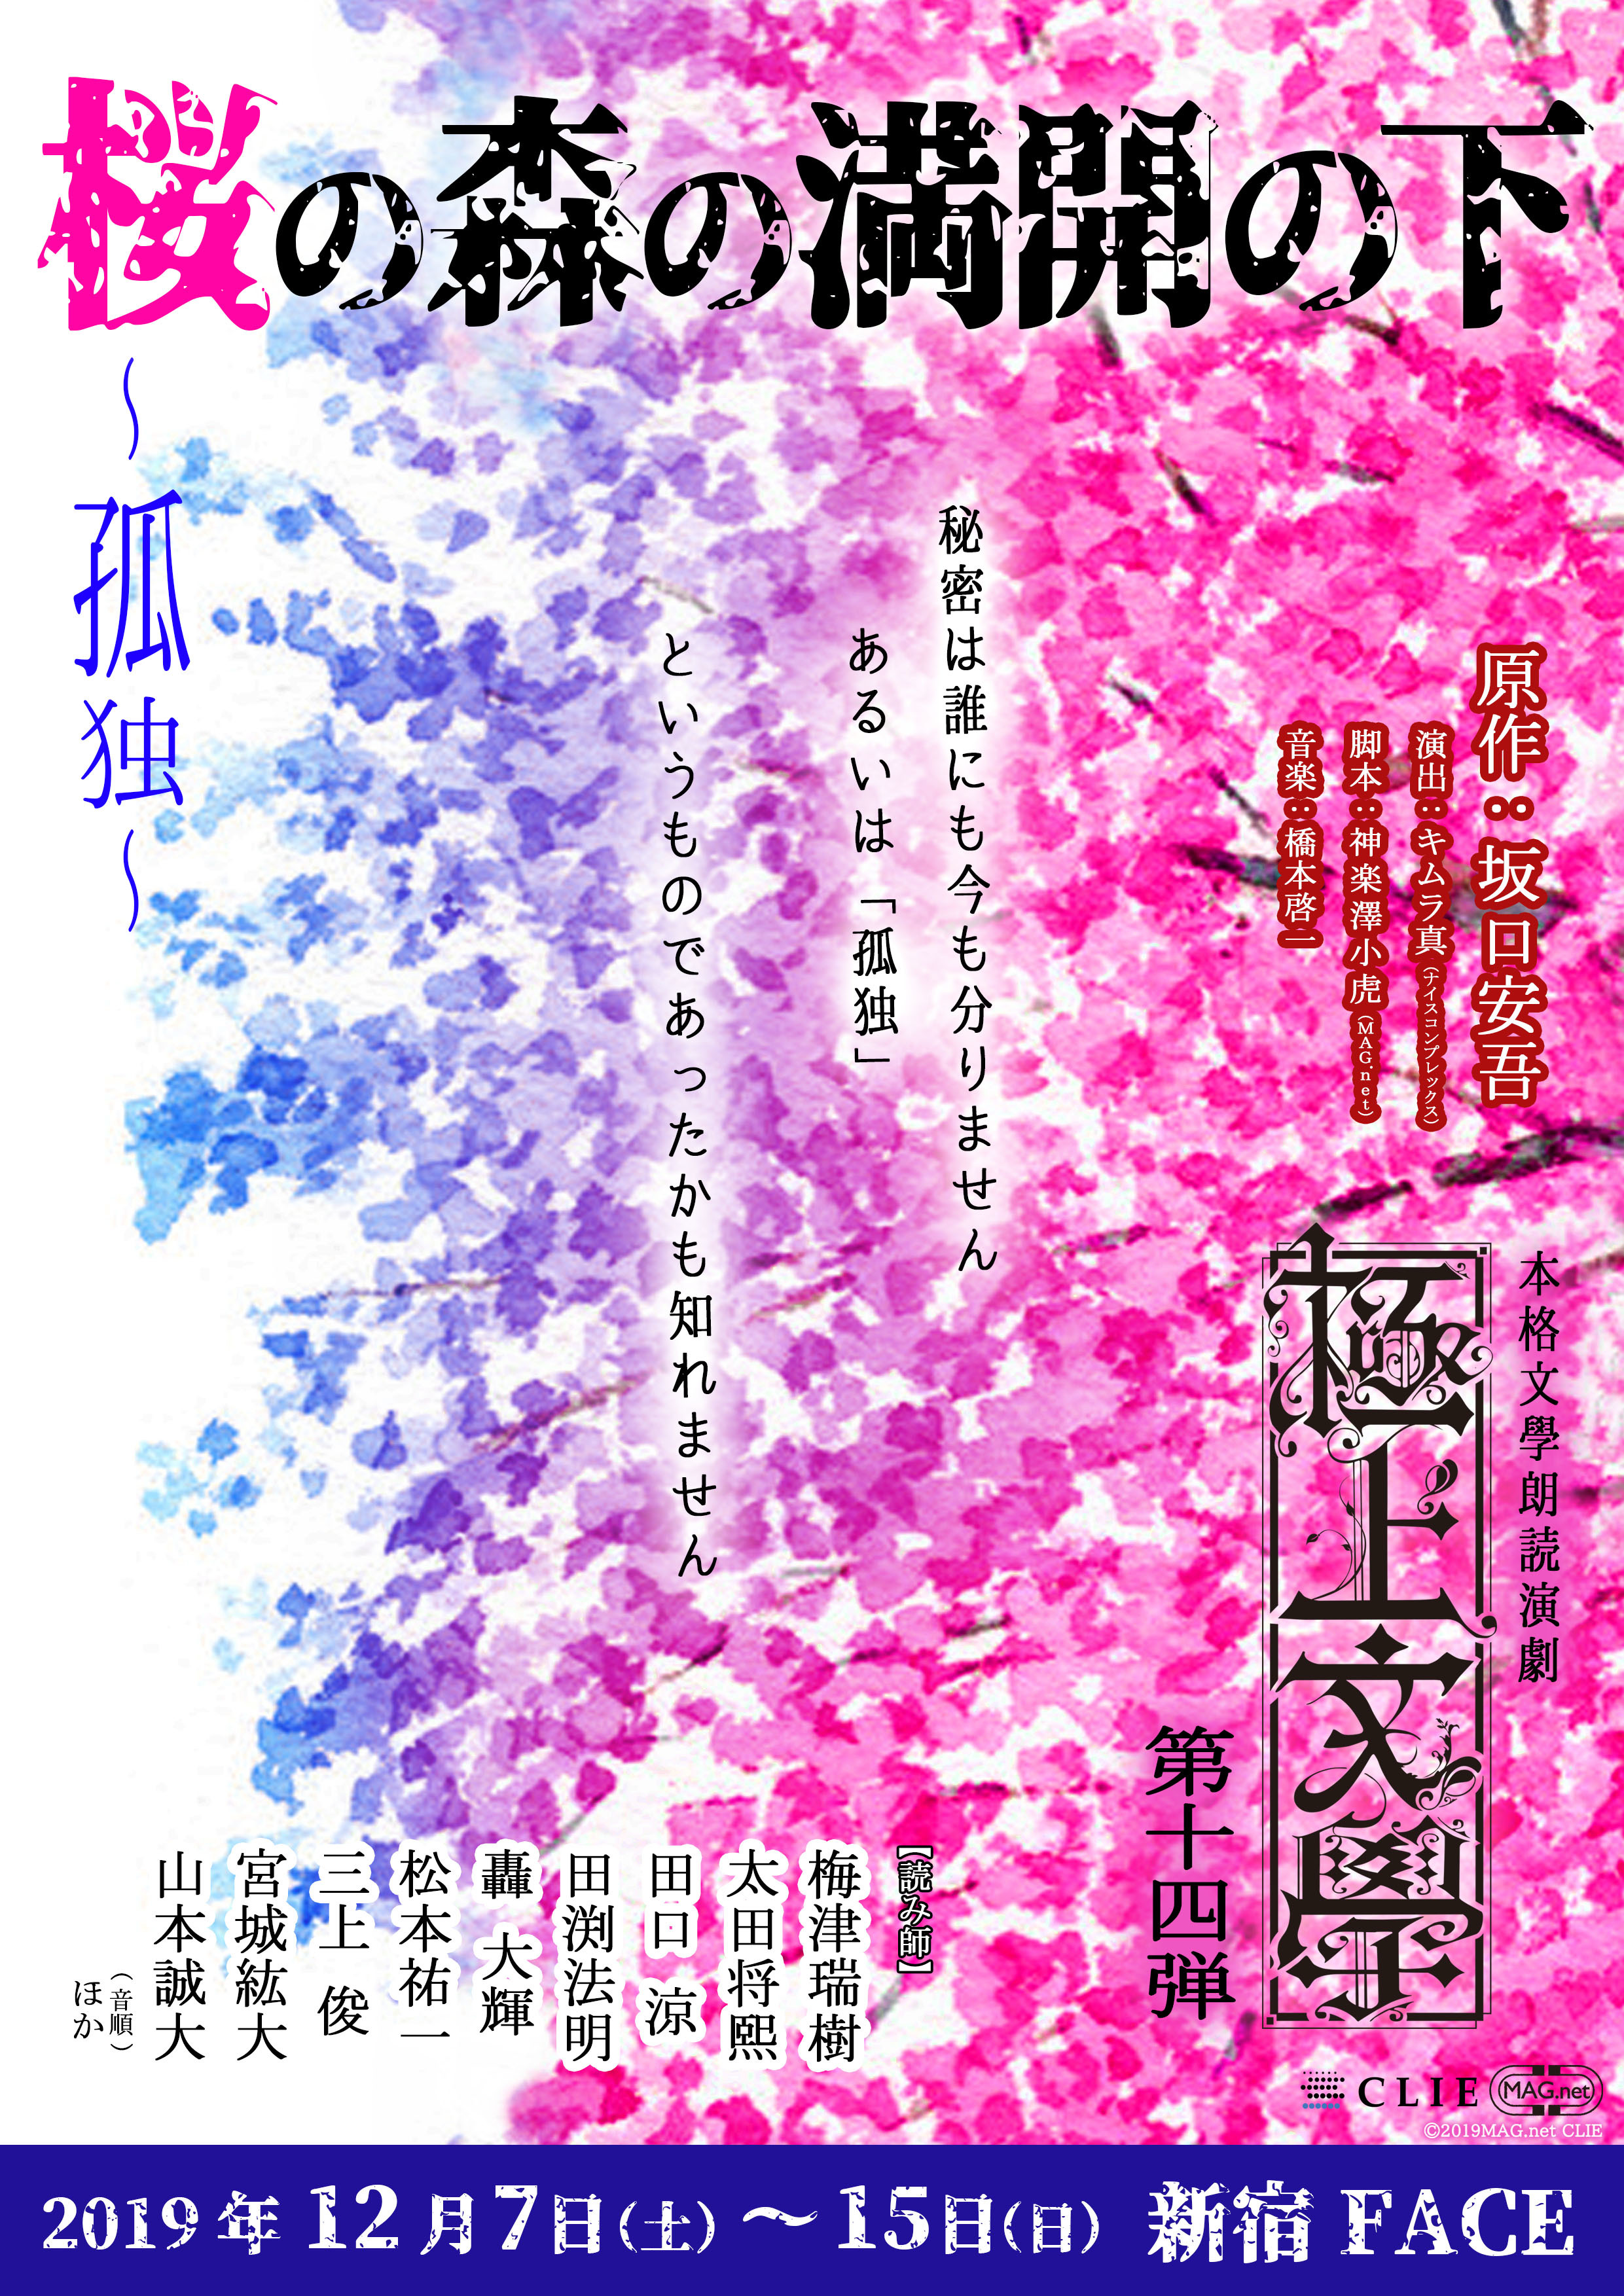 本格文學朗読演劇 極上文學第14弾「『桜の森の満開の下』～孤独～」